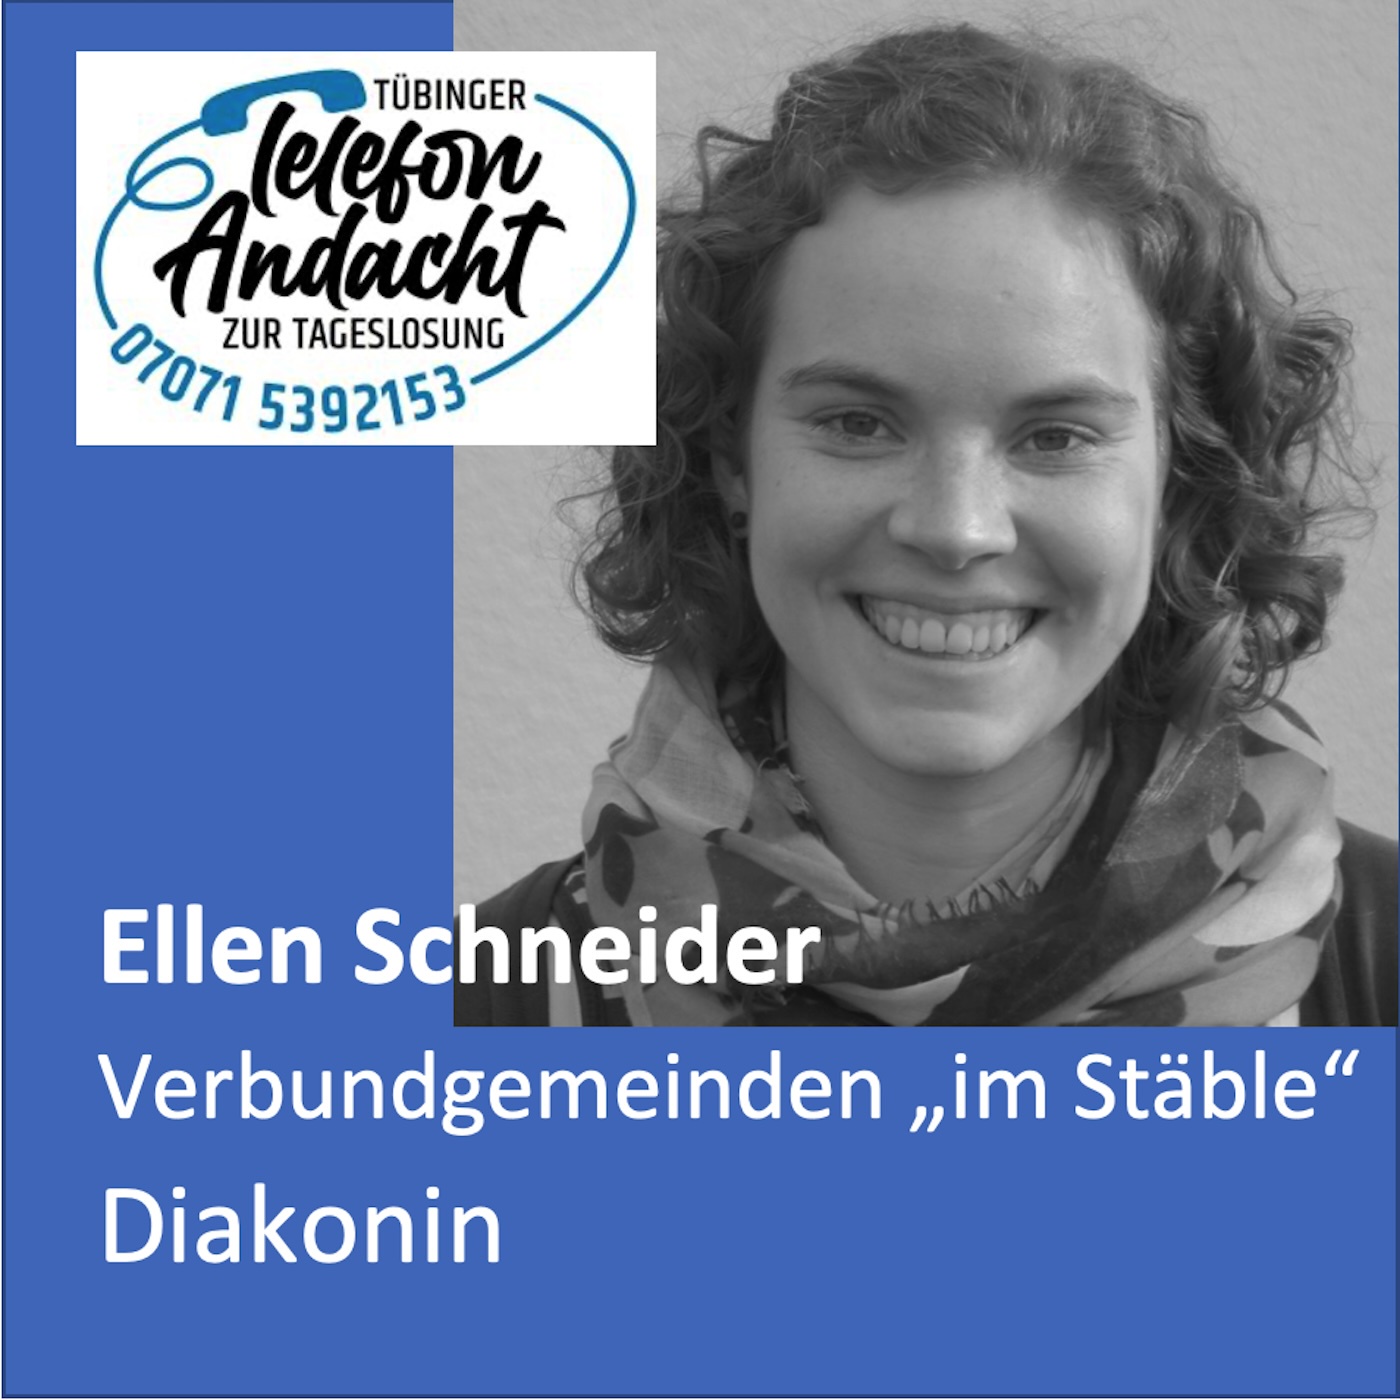 24 07 17 Ellen Schneider